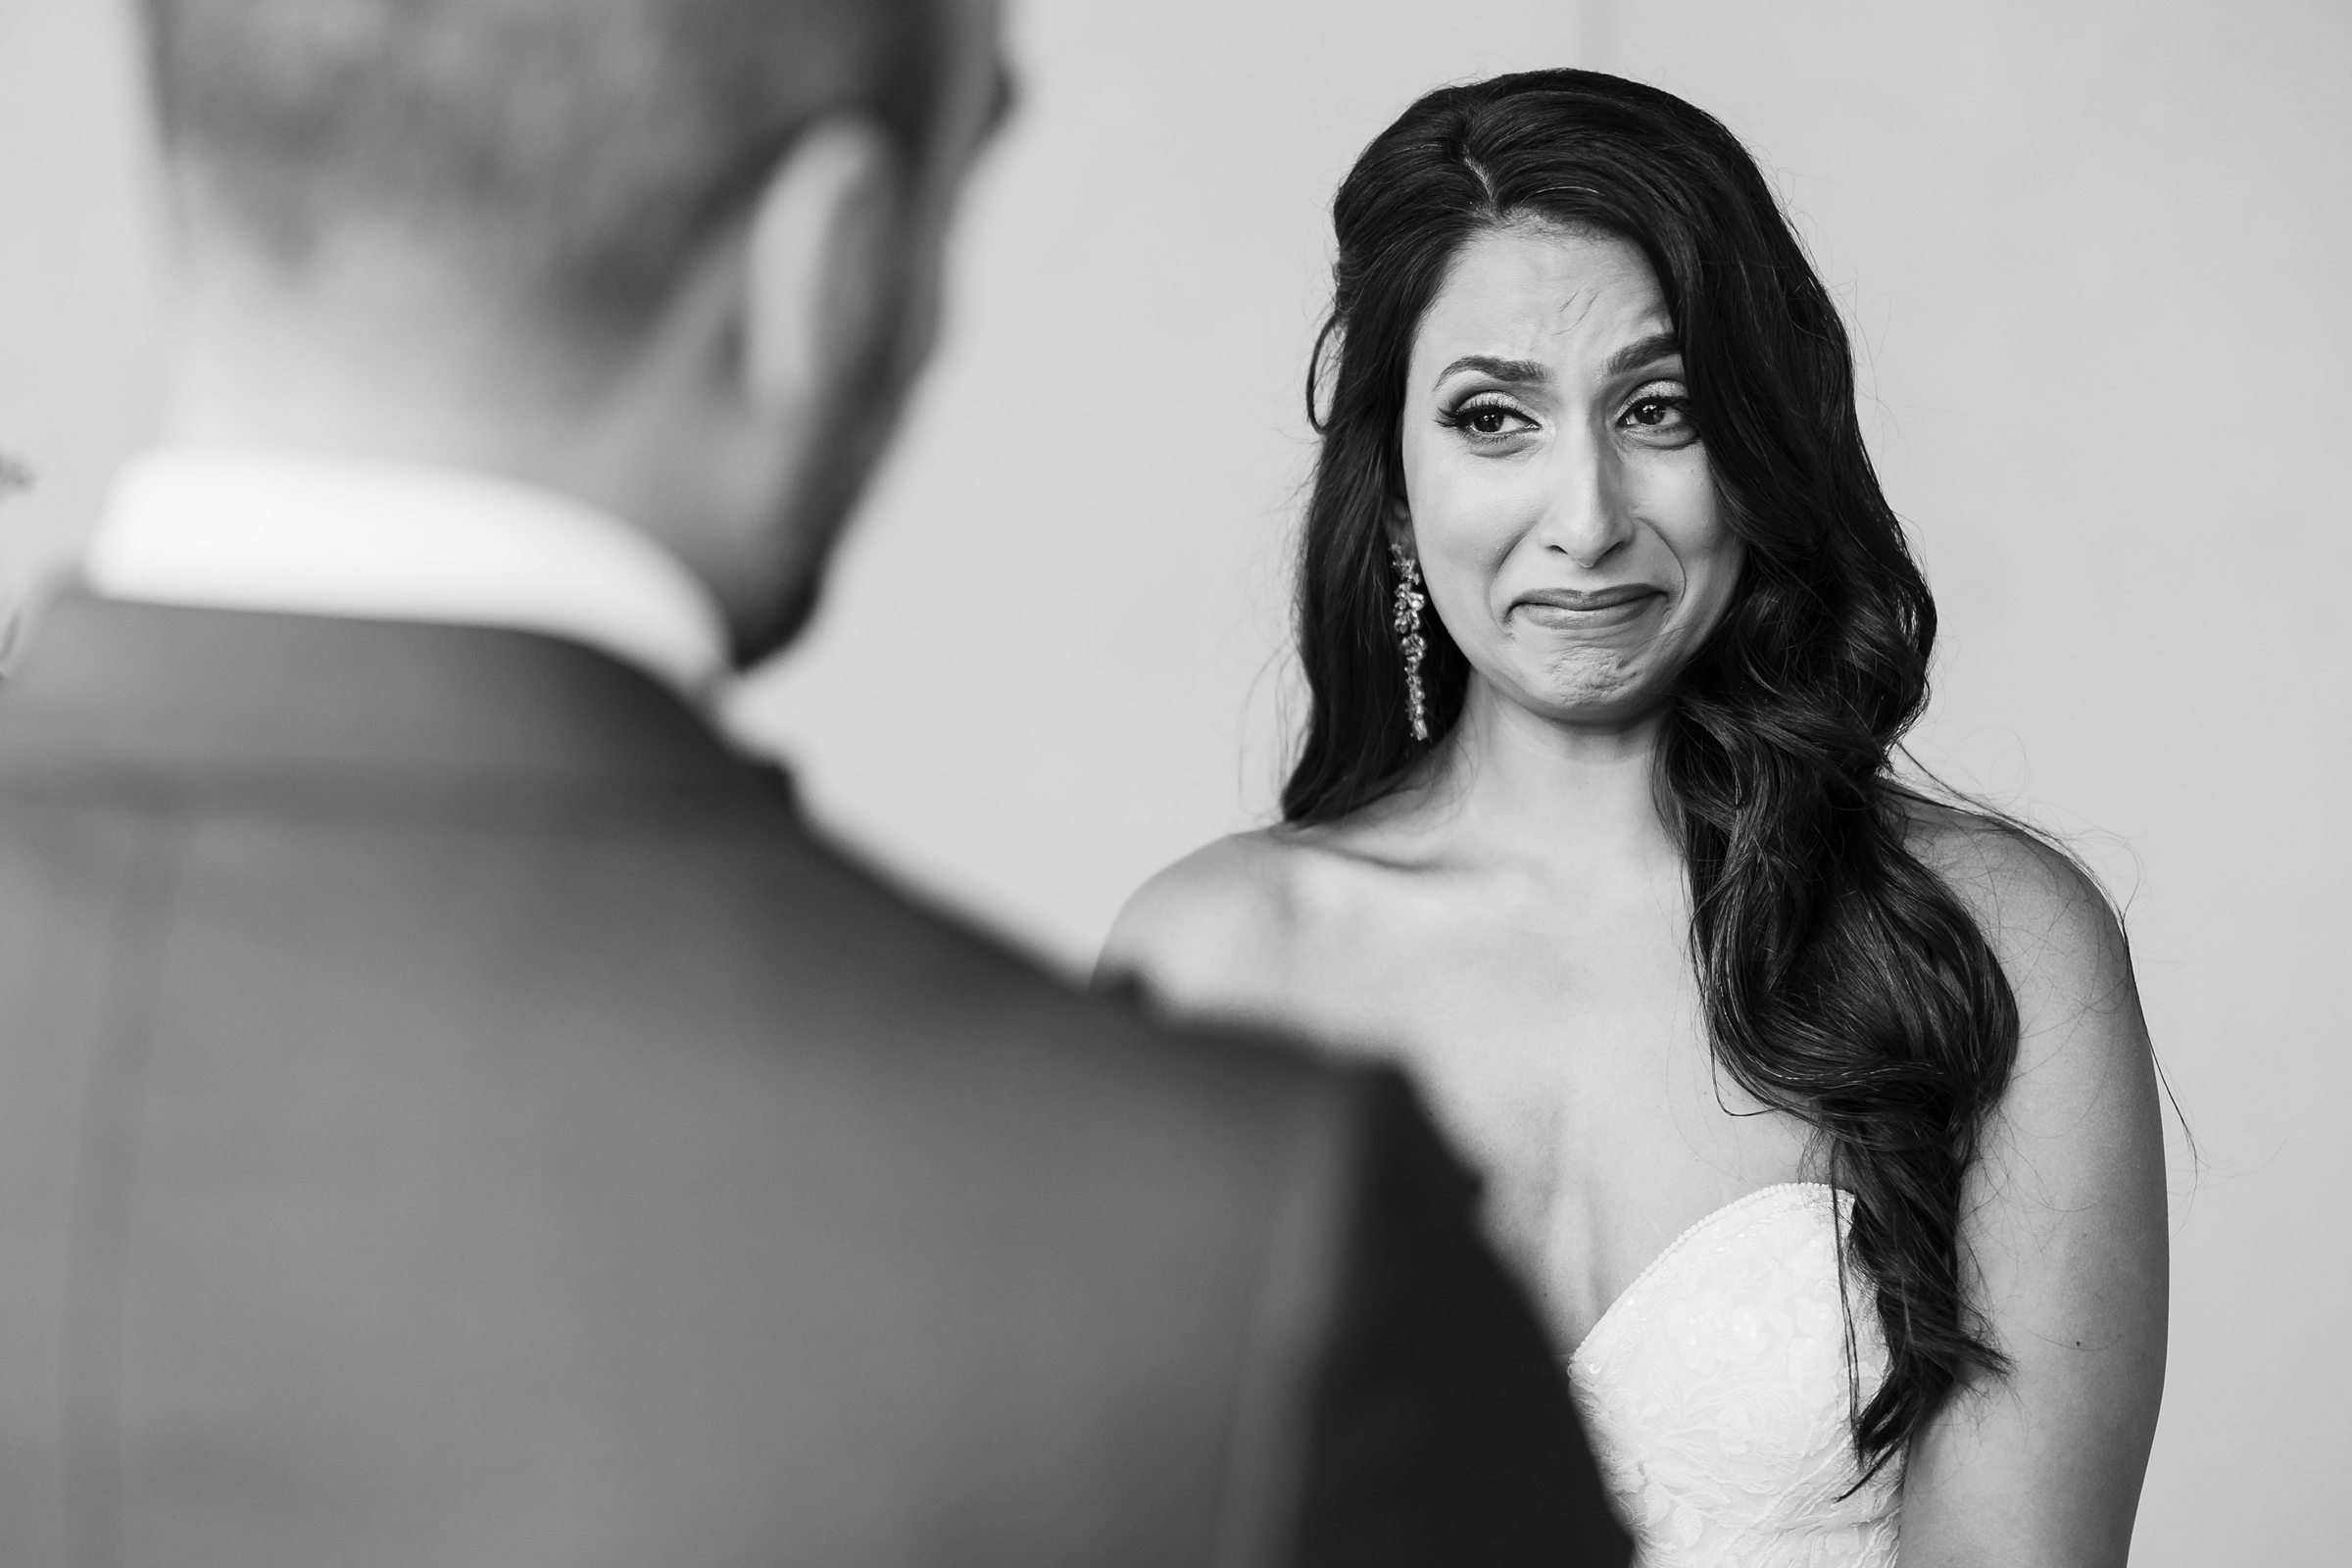 Bride gets emotional during a wedding at Shiraz Garden in Bastrop, Texas.